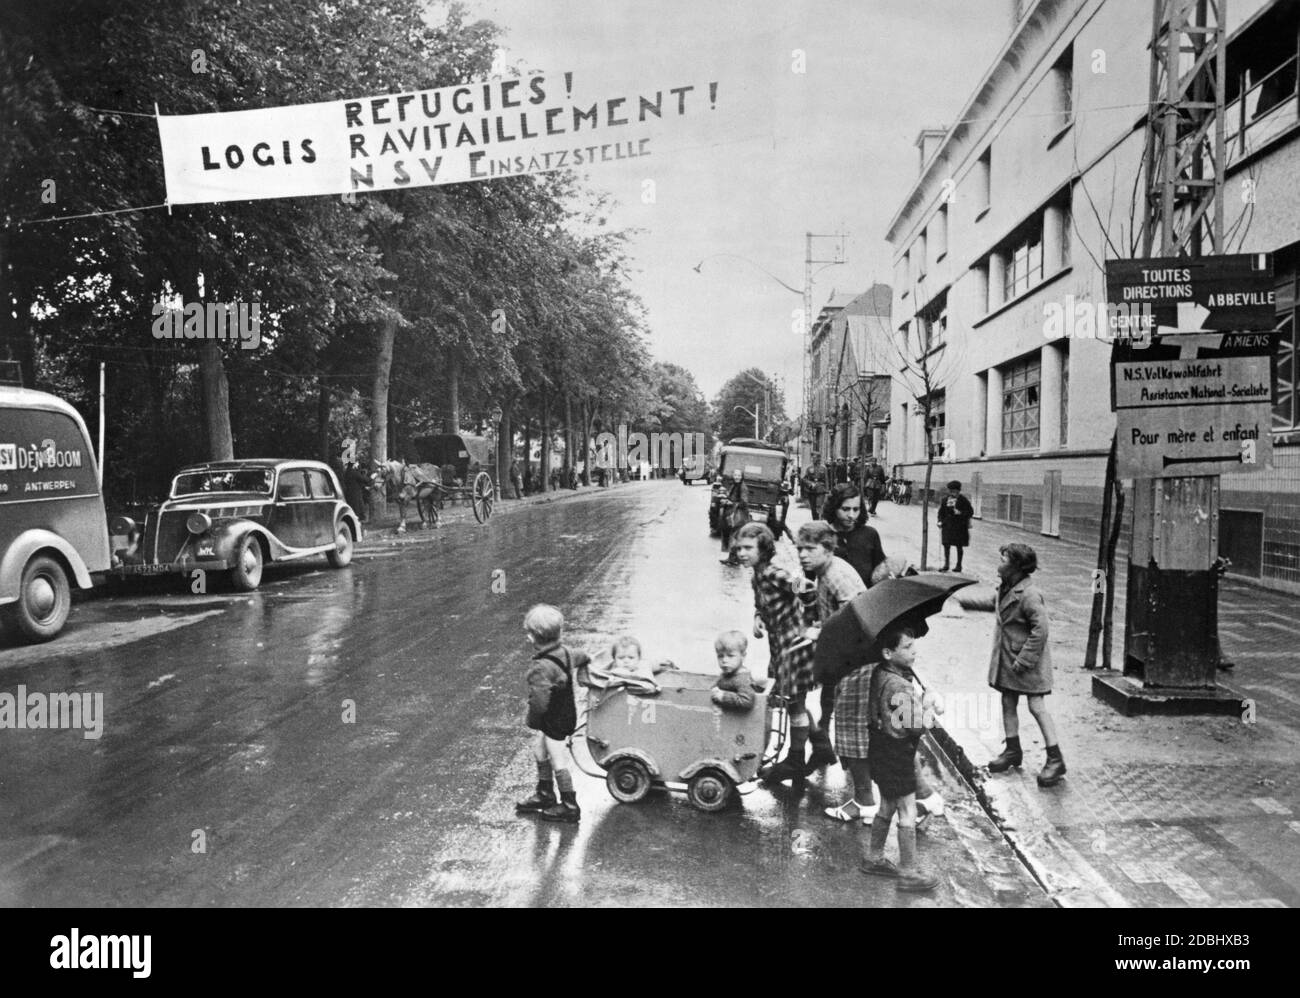 "Kinder mit einem Kinderwagen stehen an der Seite einer Straße in Beauvais. Über der Straße hängt ein Banner mit der Aufschrift "Refugies! Logis ravitaillement! NSV-Betriebsstandort''. Die National Socialist People's Welfare Organization kümmert sich um französische Flüchtlinge." Stockfoto